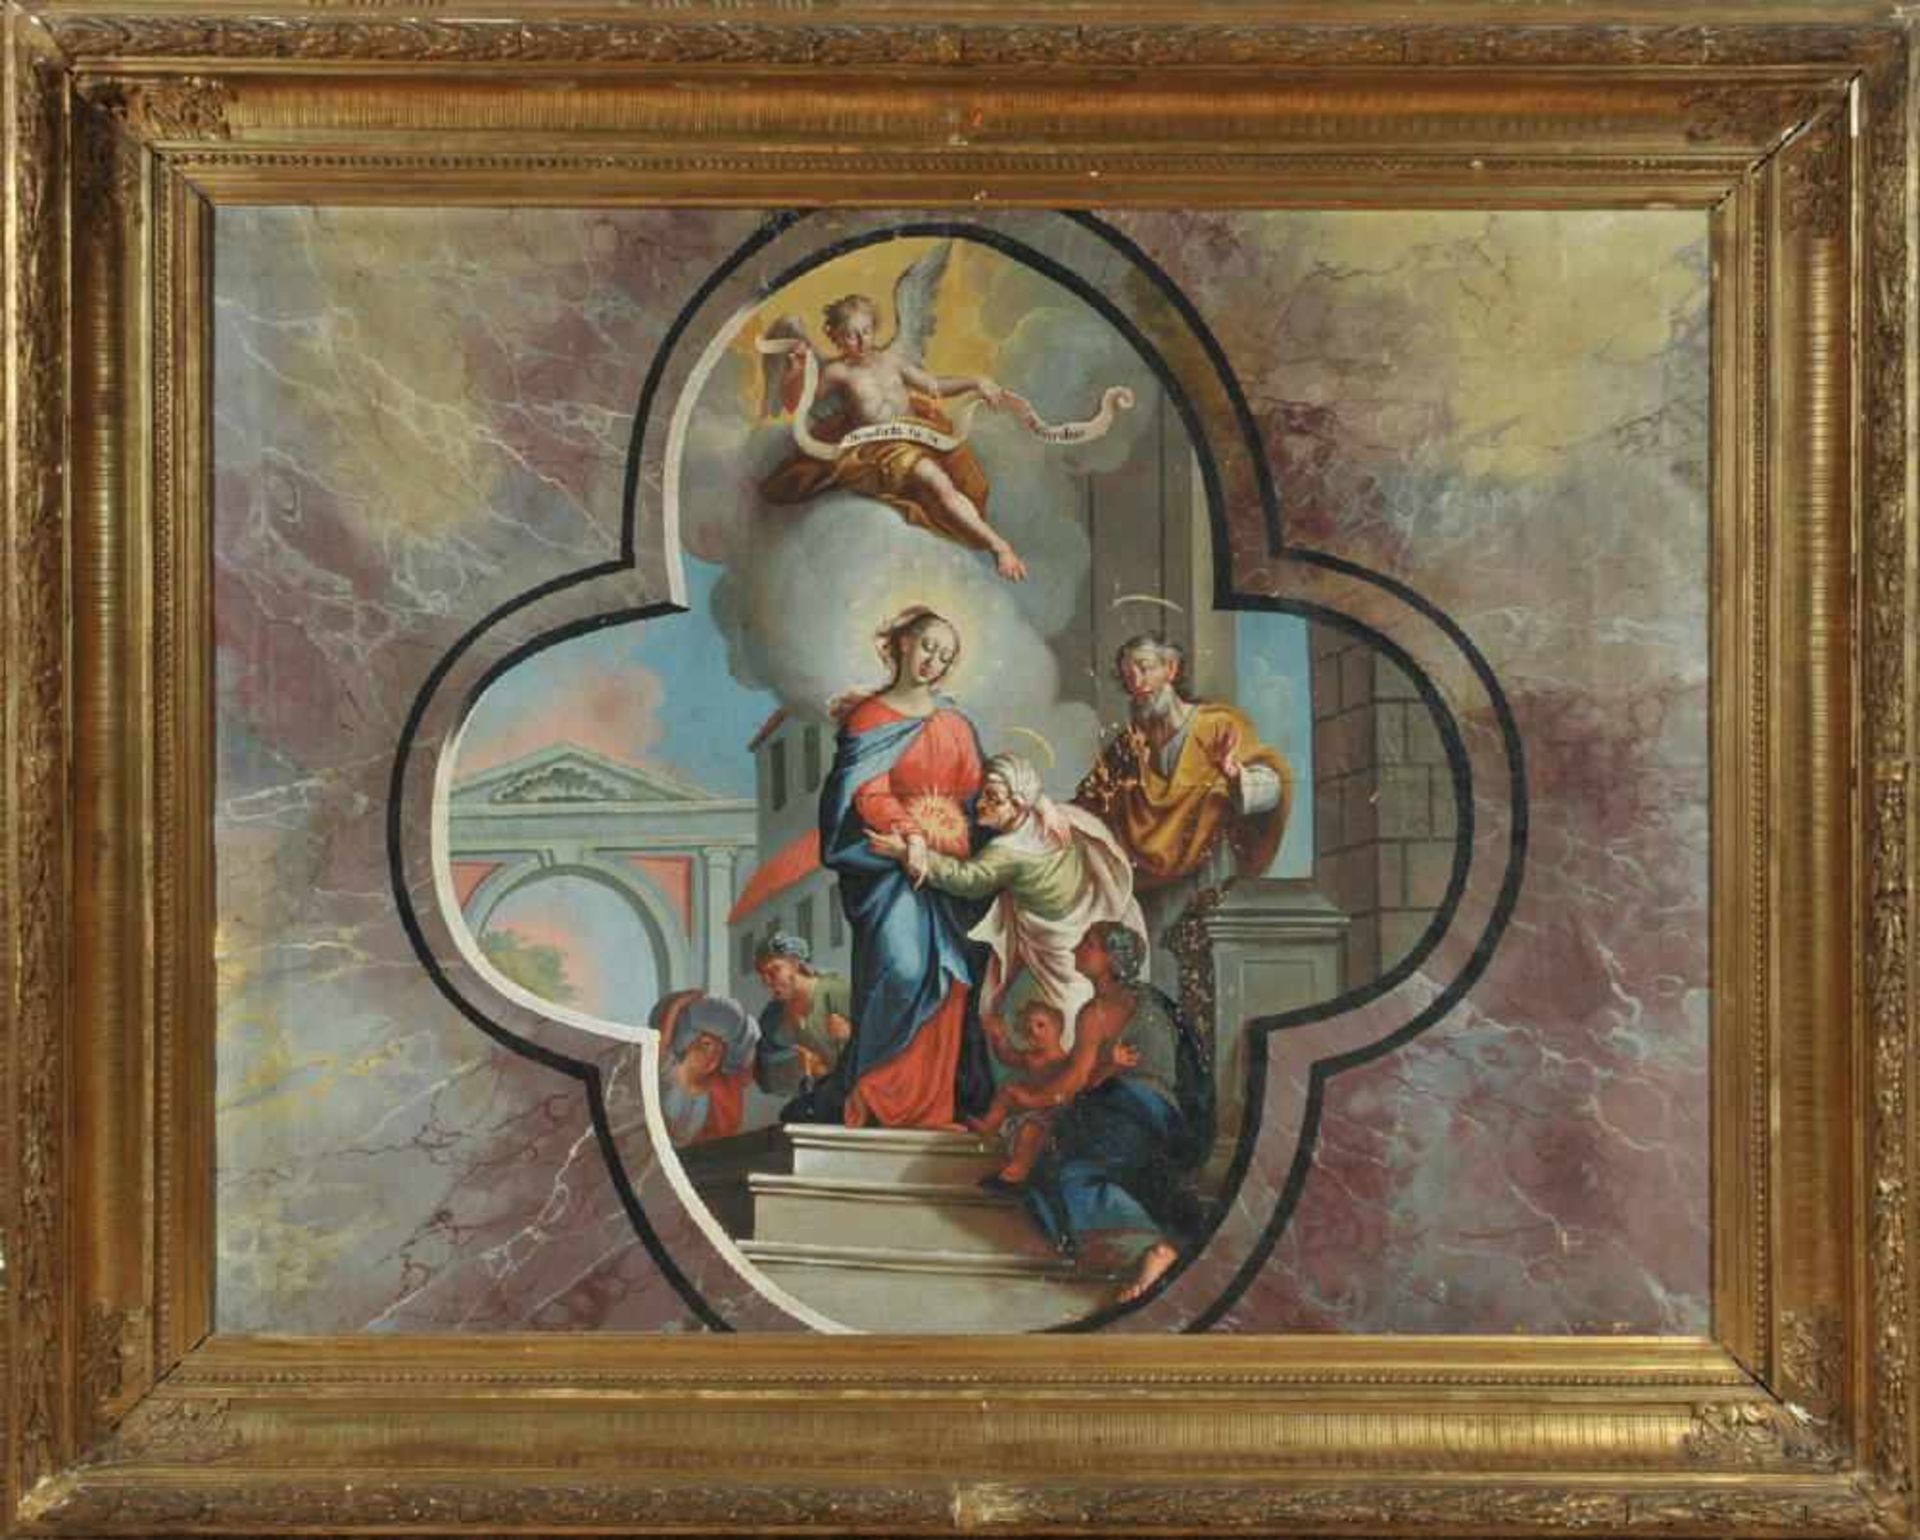 Bildnismaler wohl des 19. Jh.Öl/Lwd, 93 x 123 cm, " Heilige Familie ", kleinere Farbfehlstellen